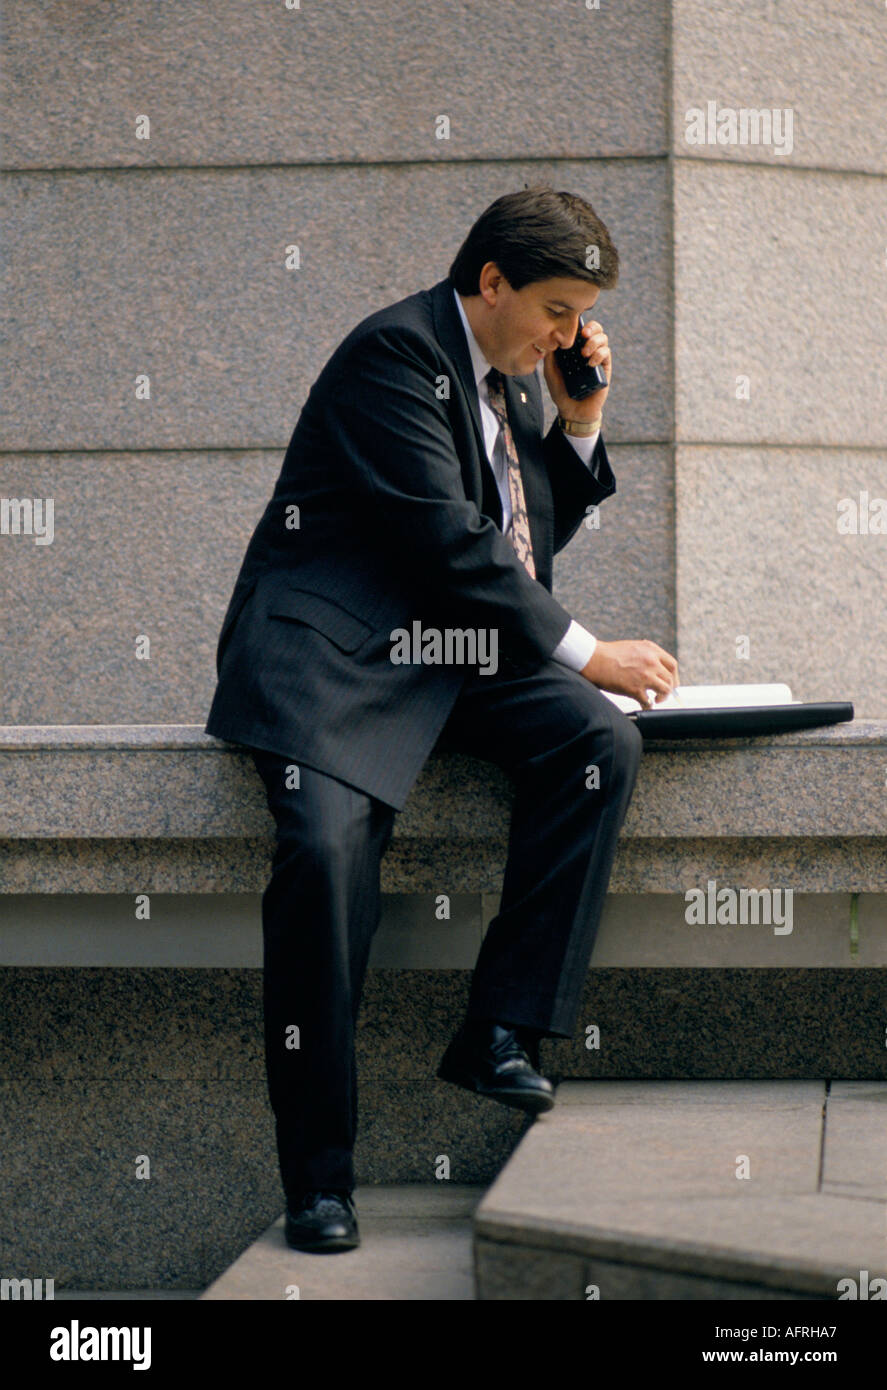 L'homme faisant affaires sur son téléphone mobile. Ville de Londres en Angleterre. Circa 1995 1990 UK HOMER SYKES Banque D'Images